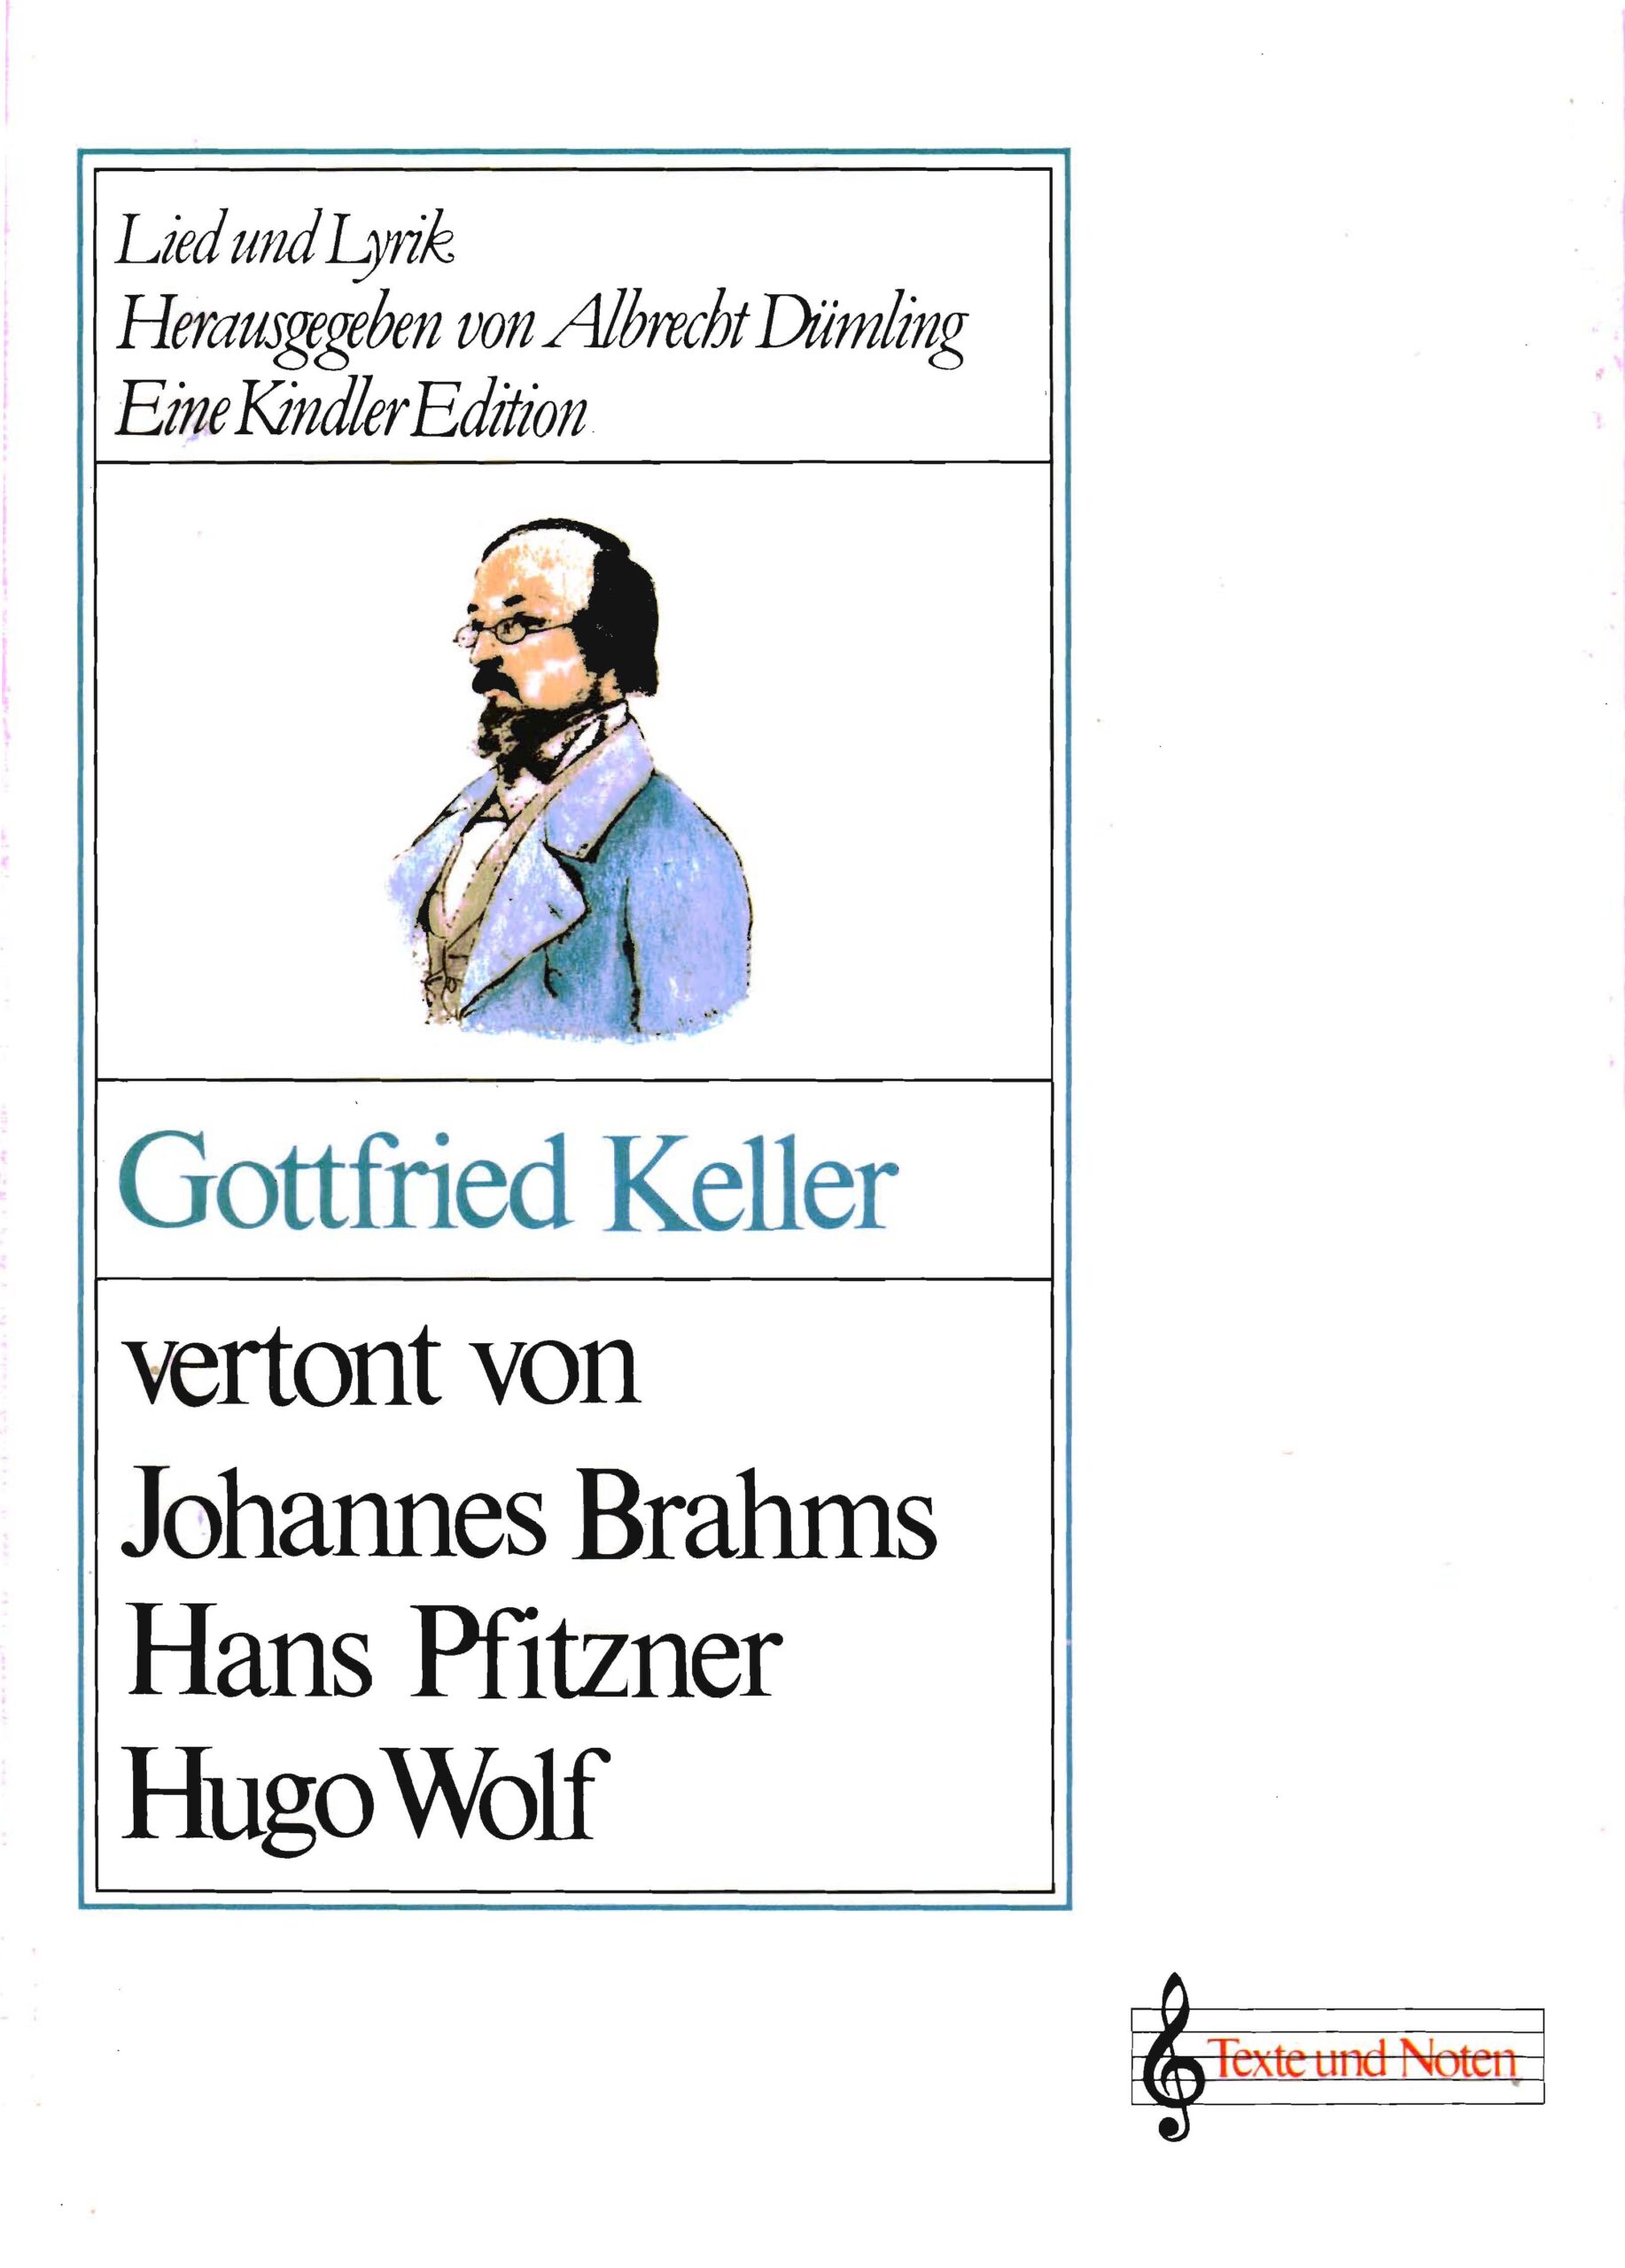 Gottfried Keller vertont von Johannes Brahms, Hugo Wolf, Hans Pfitzner